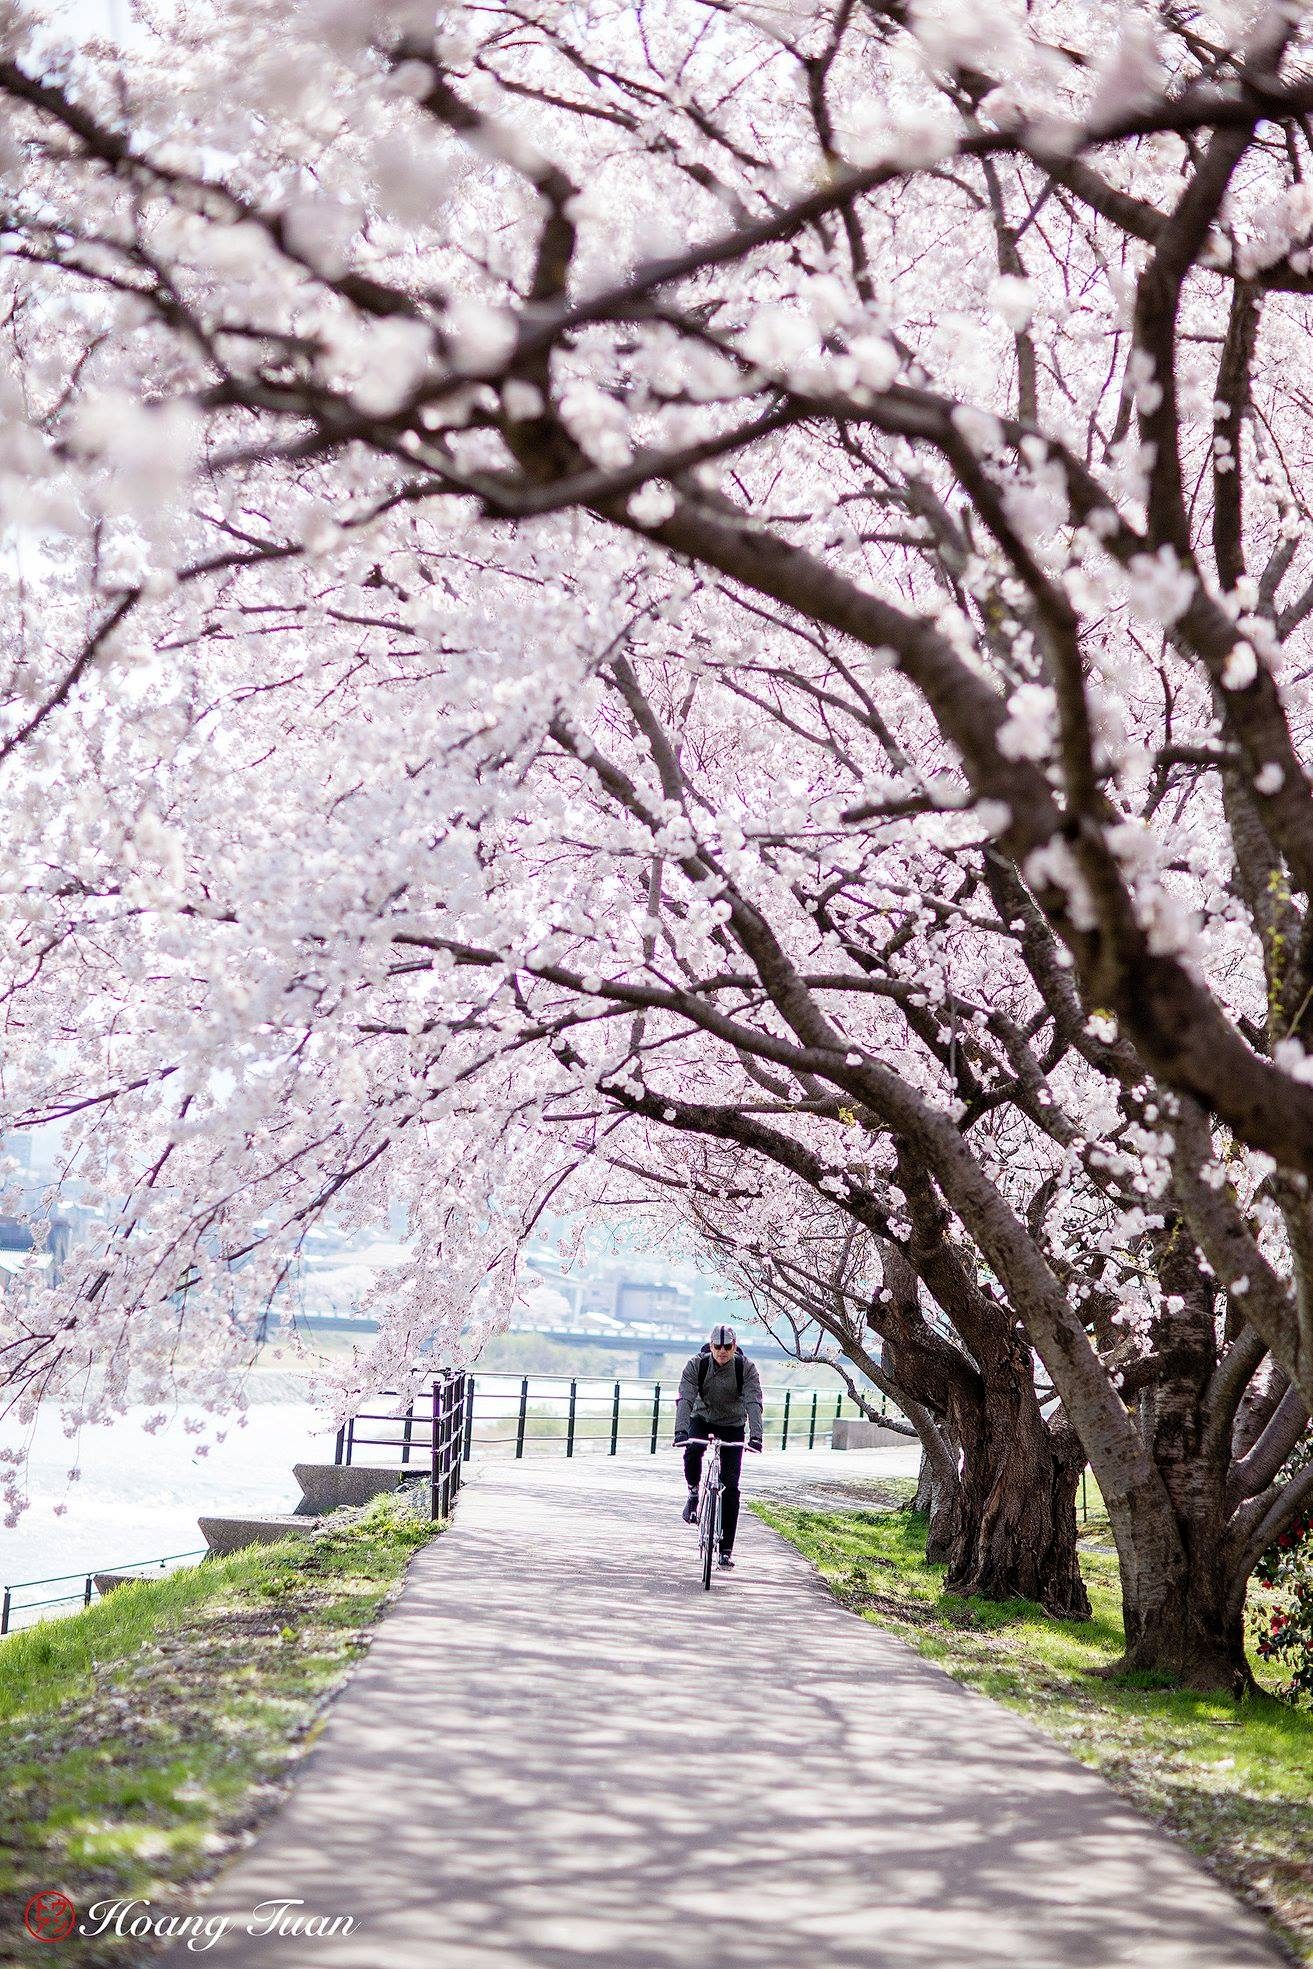 Hoang Anh Tuan – Sakura Blooming at Saikawa River in Kanazawa